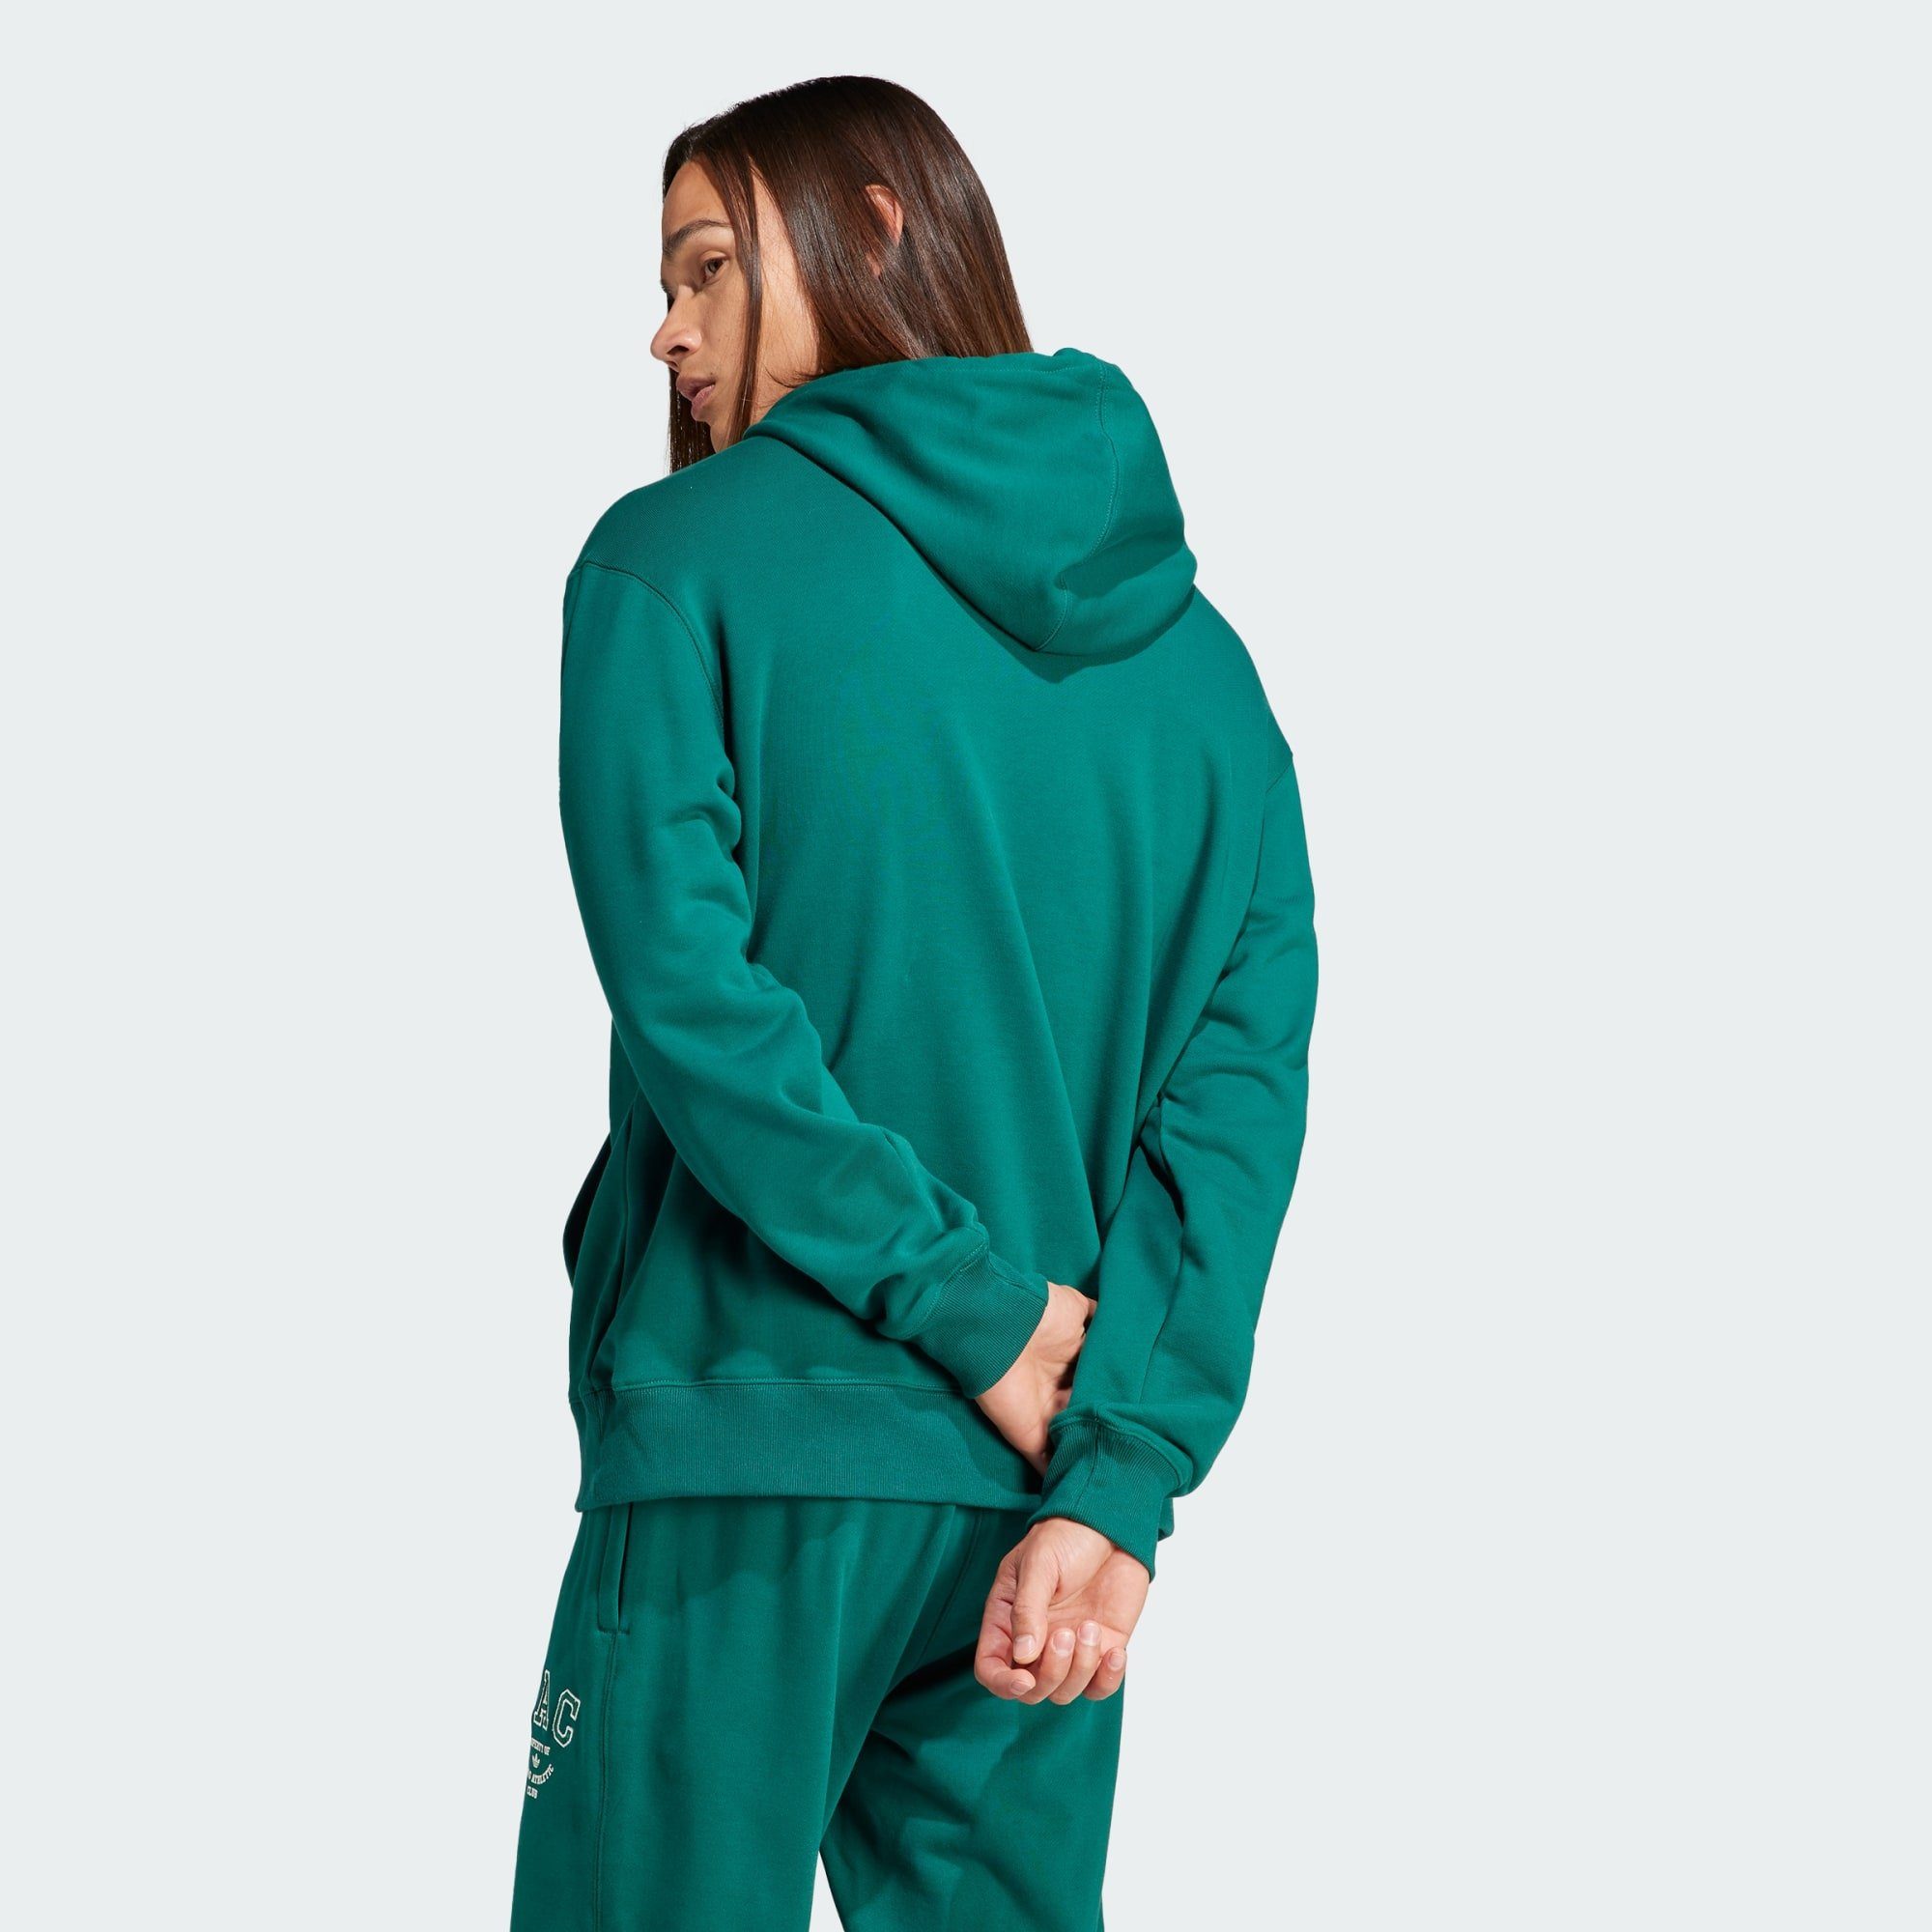 AAC Originals Hoodie adidas HOODIE Collegiate Green